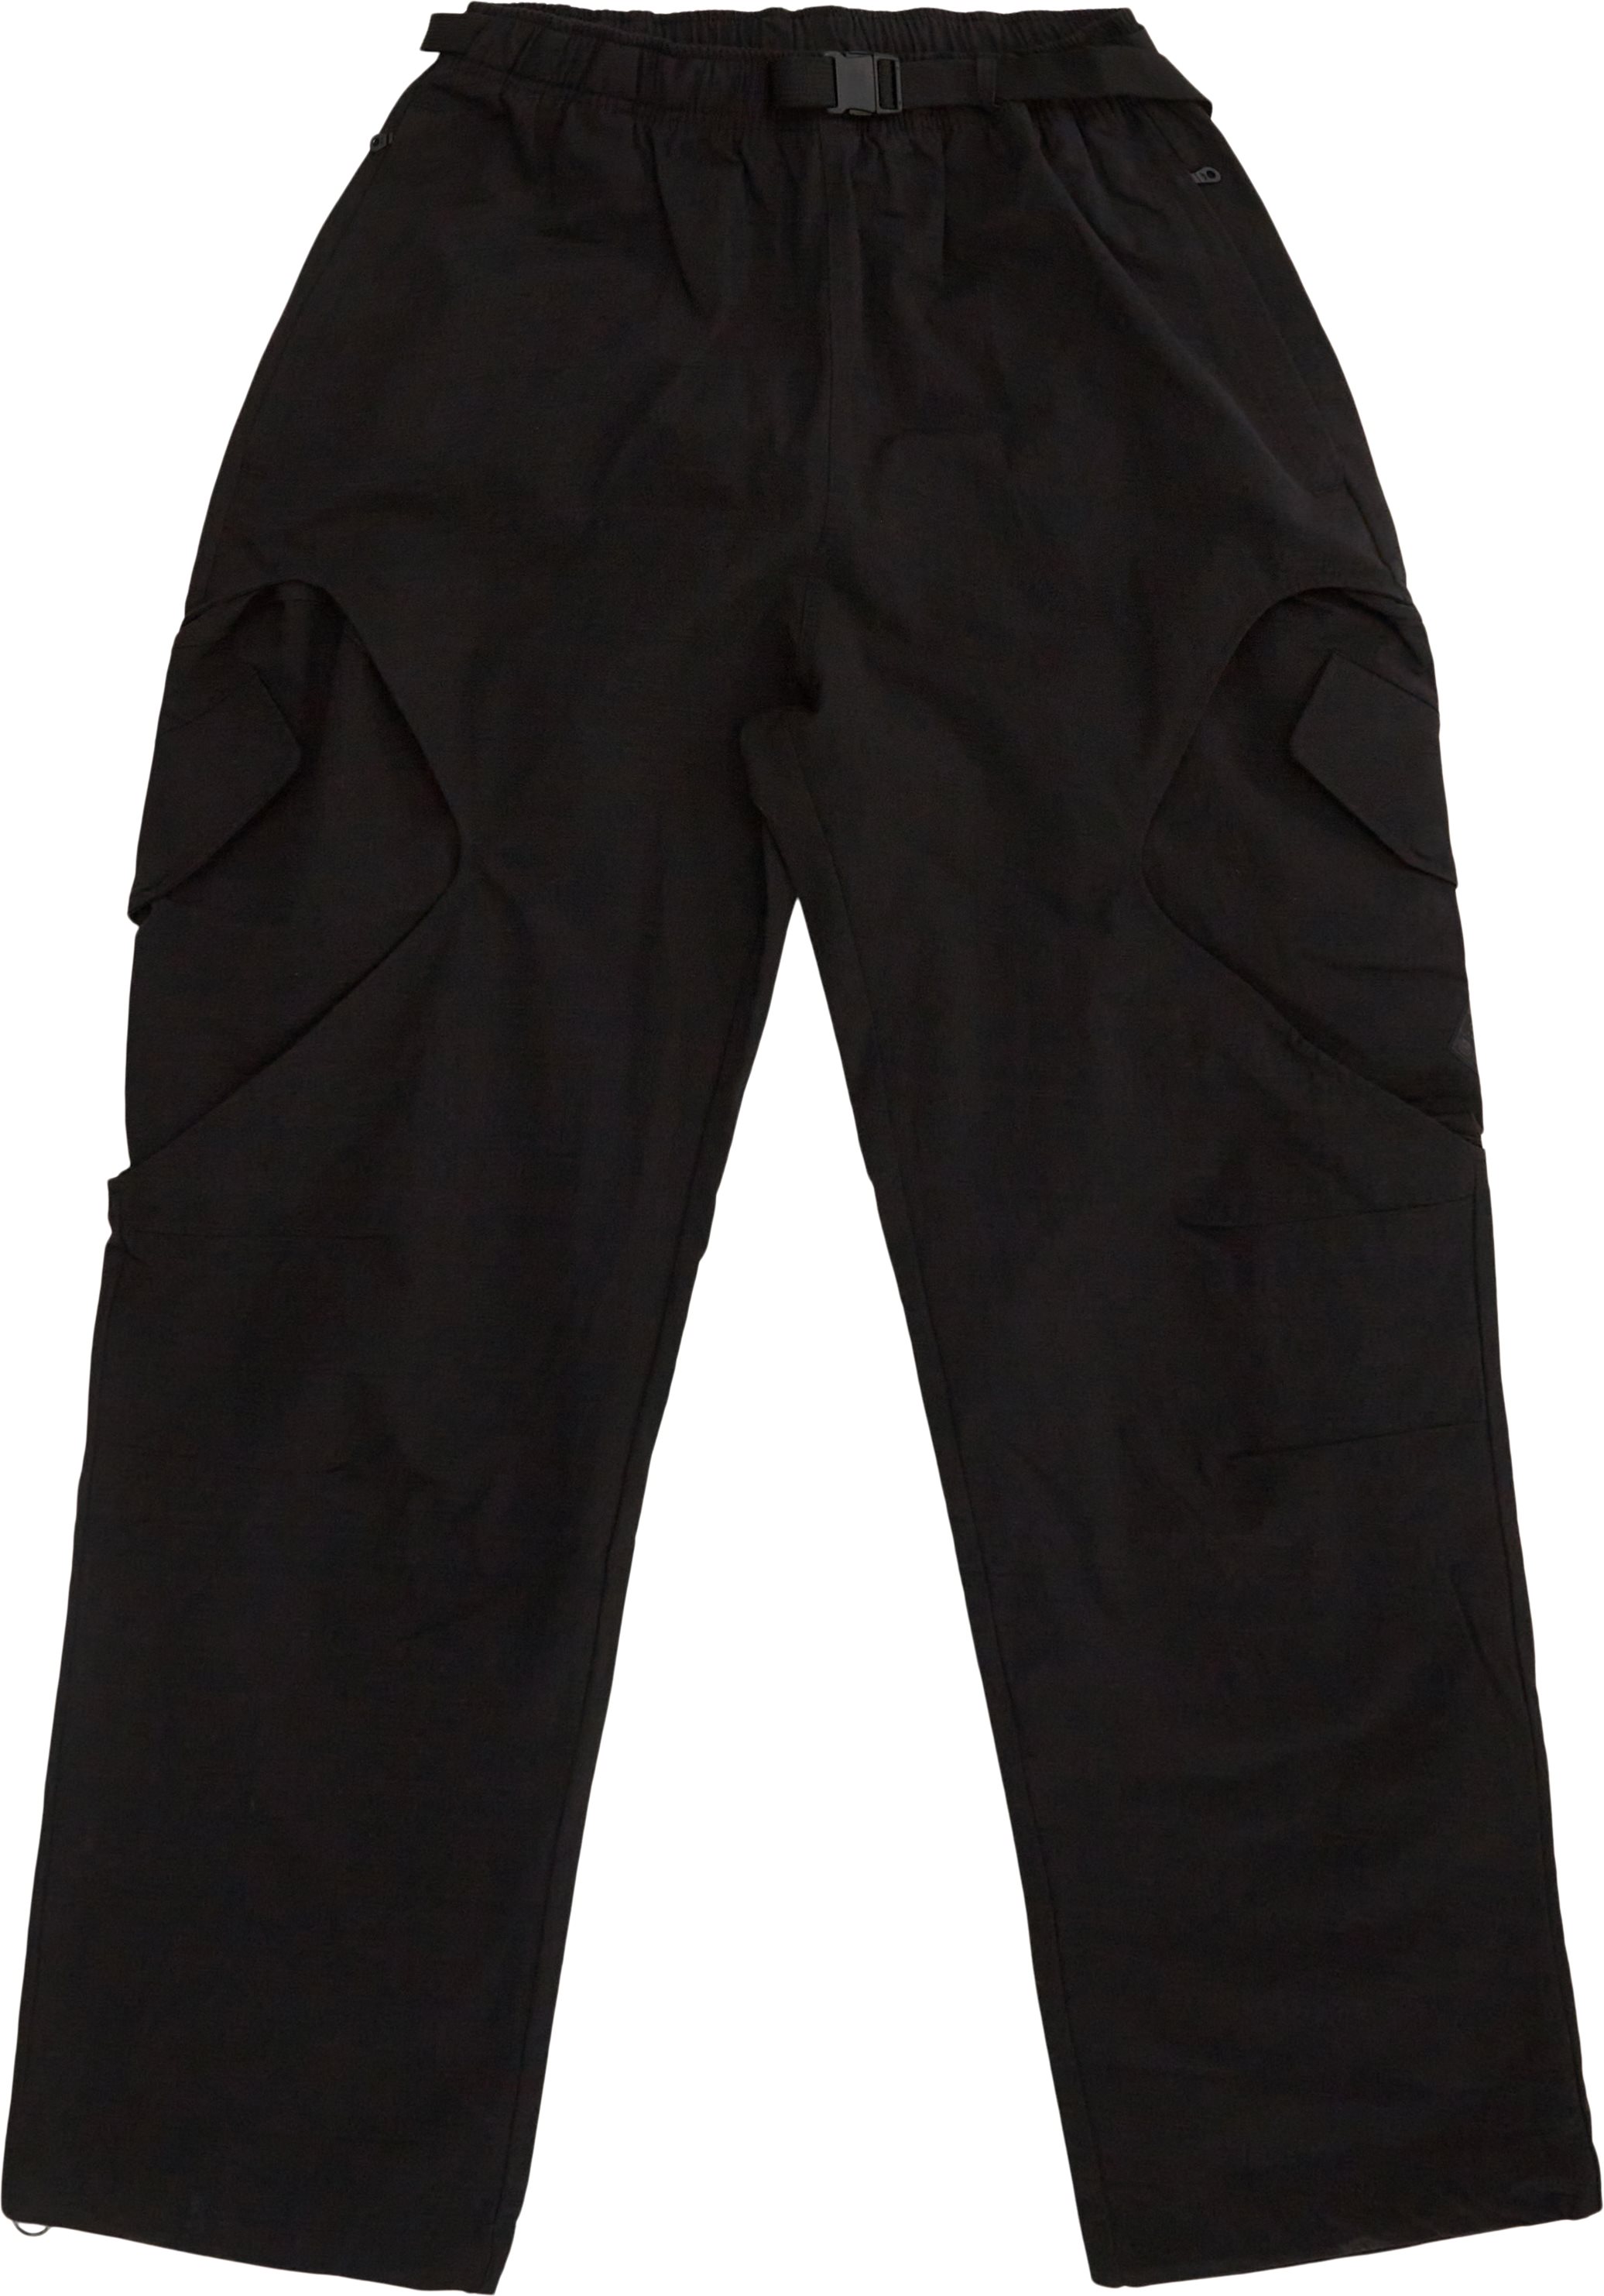 Adidas Originals Trousers ADV PRM IJ0719 Black